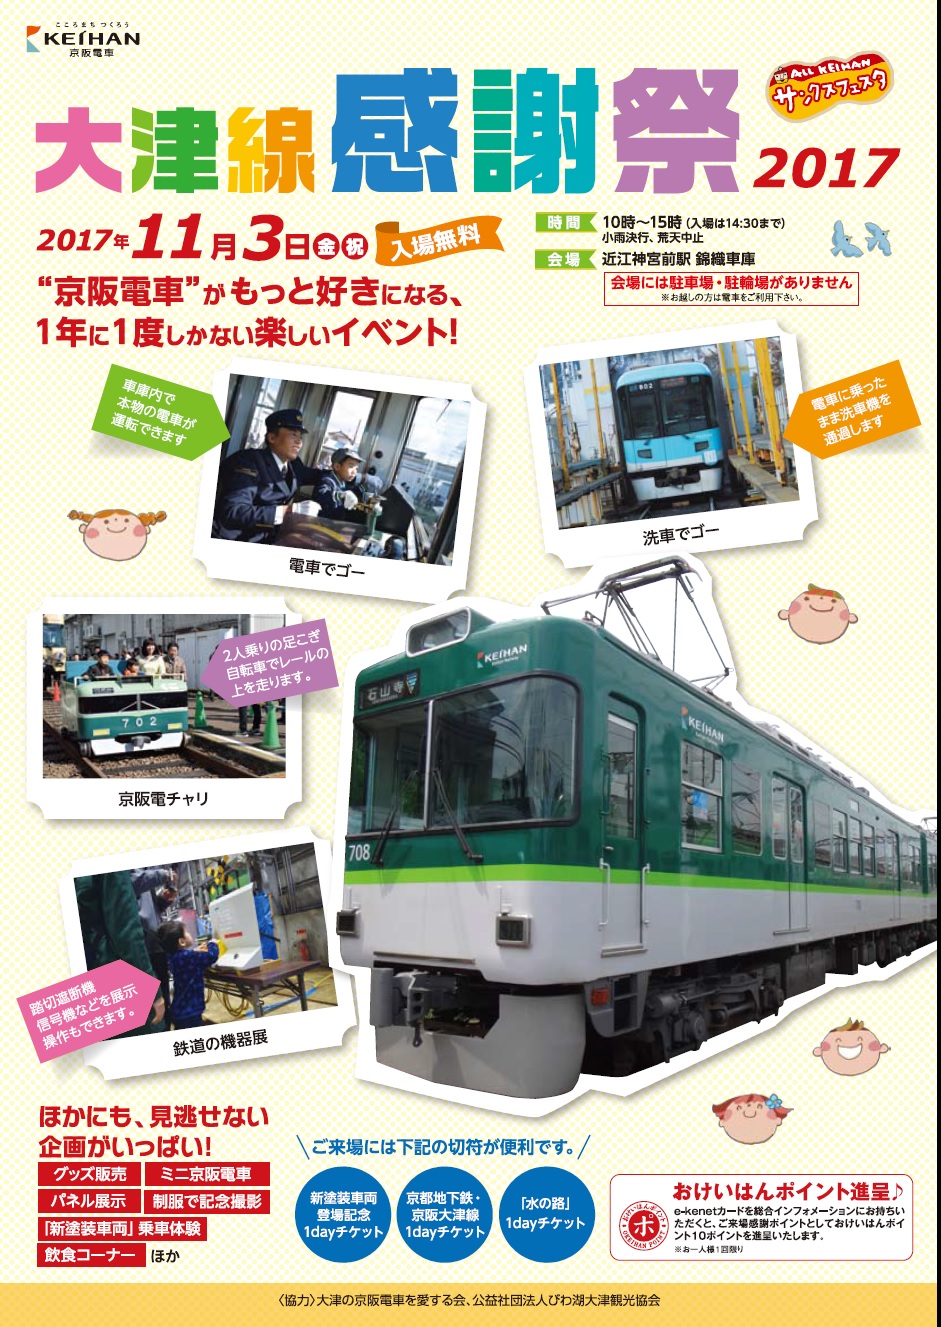 【11月3日】1年に1度の大イベント！「大津線感謝祭2017」で京阪電車の錦織車庫が一般公開されます！本物の電車を運転するチャンスあり☆入場無料！